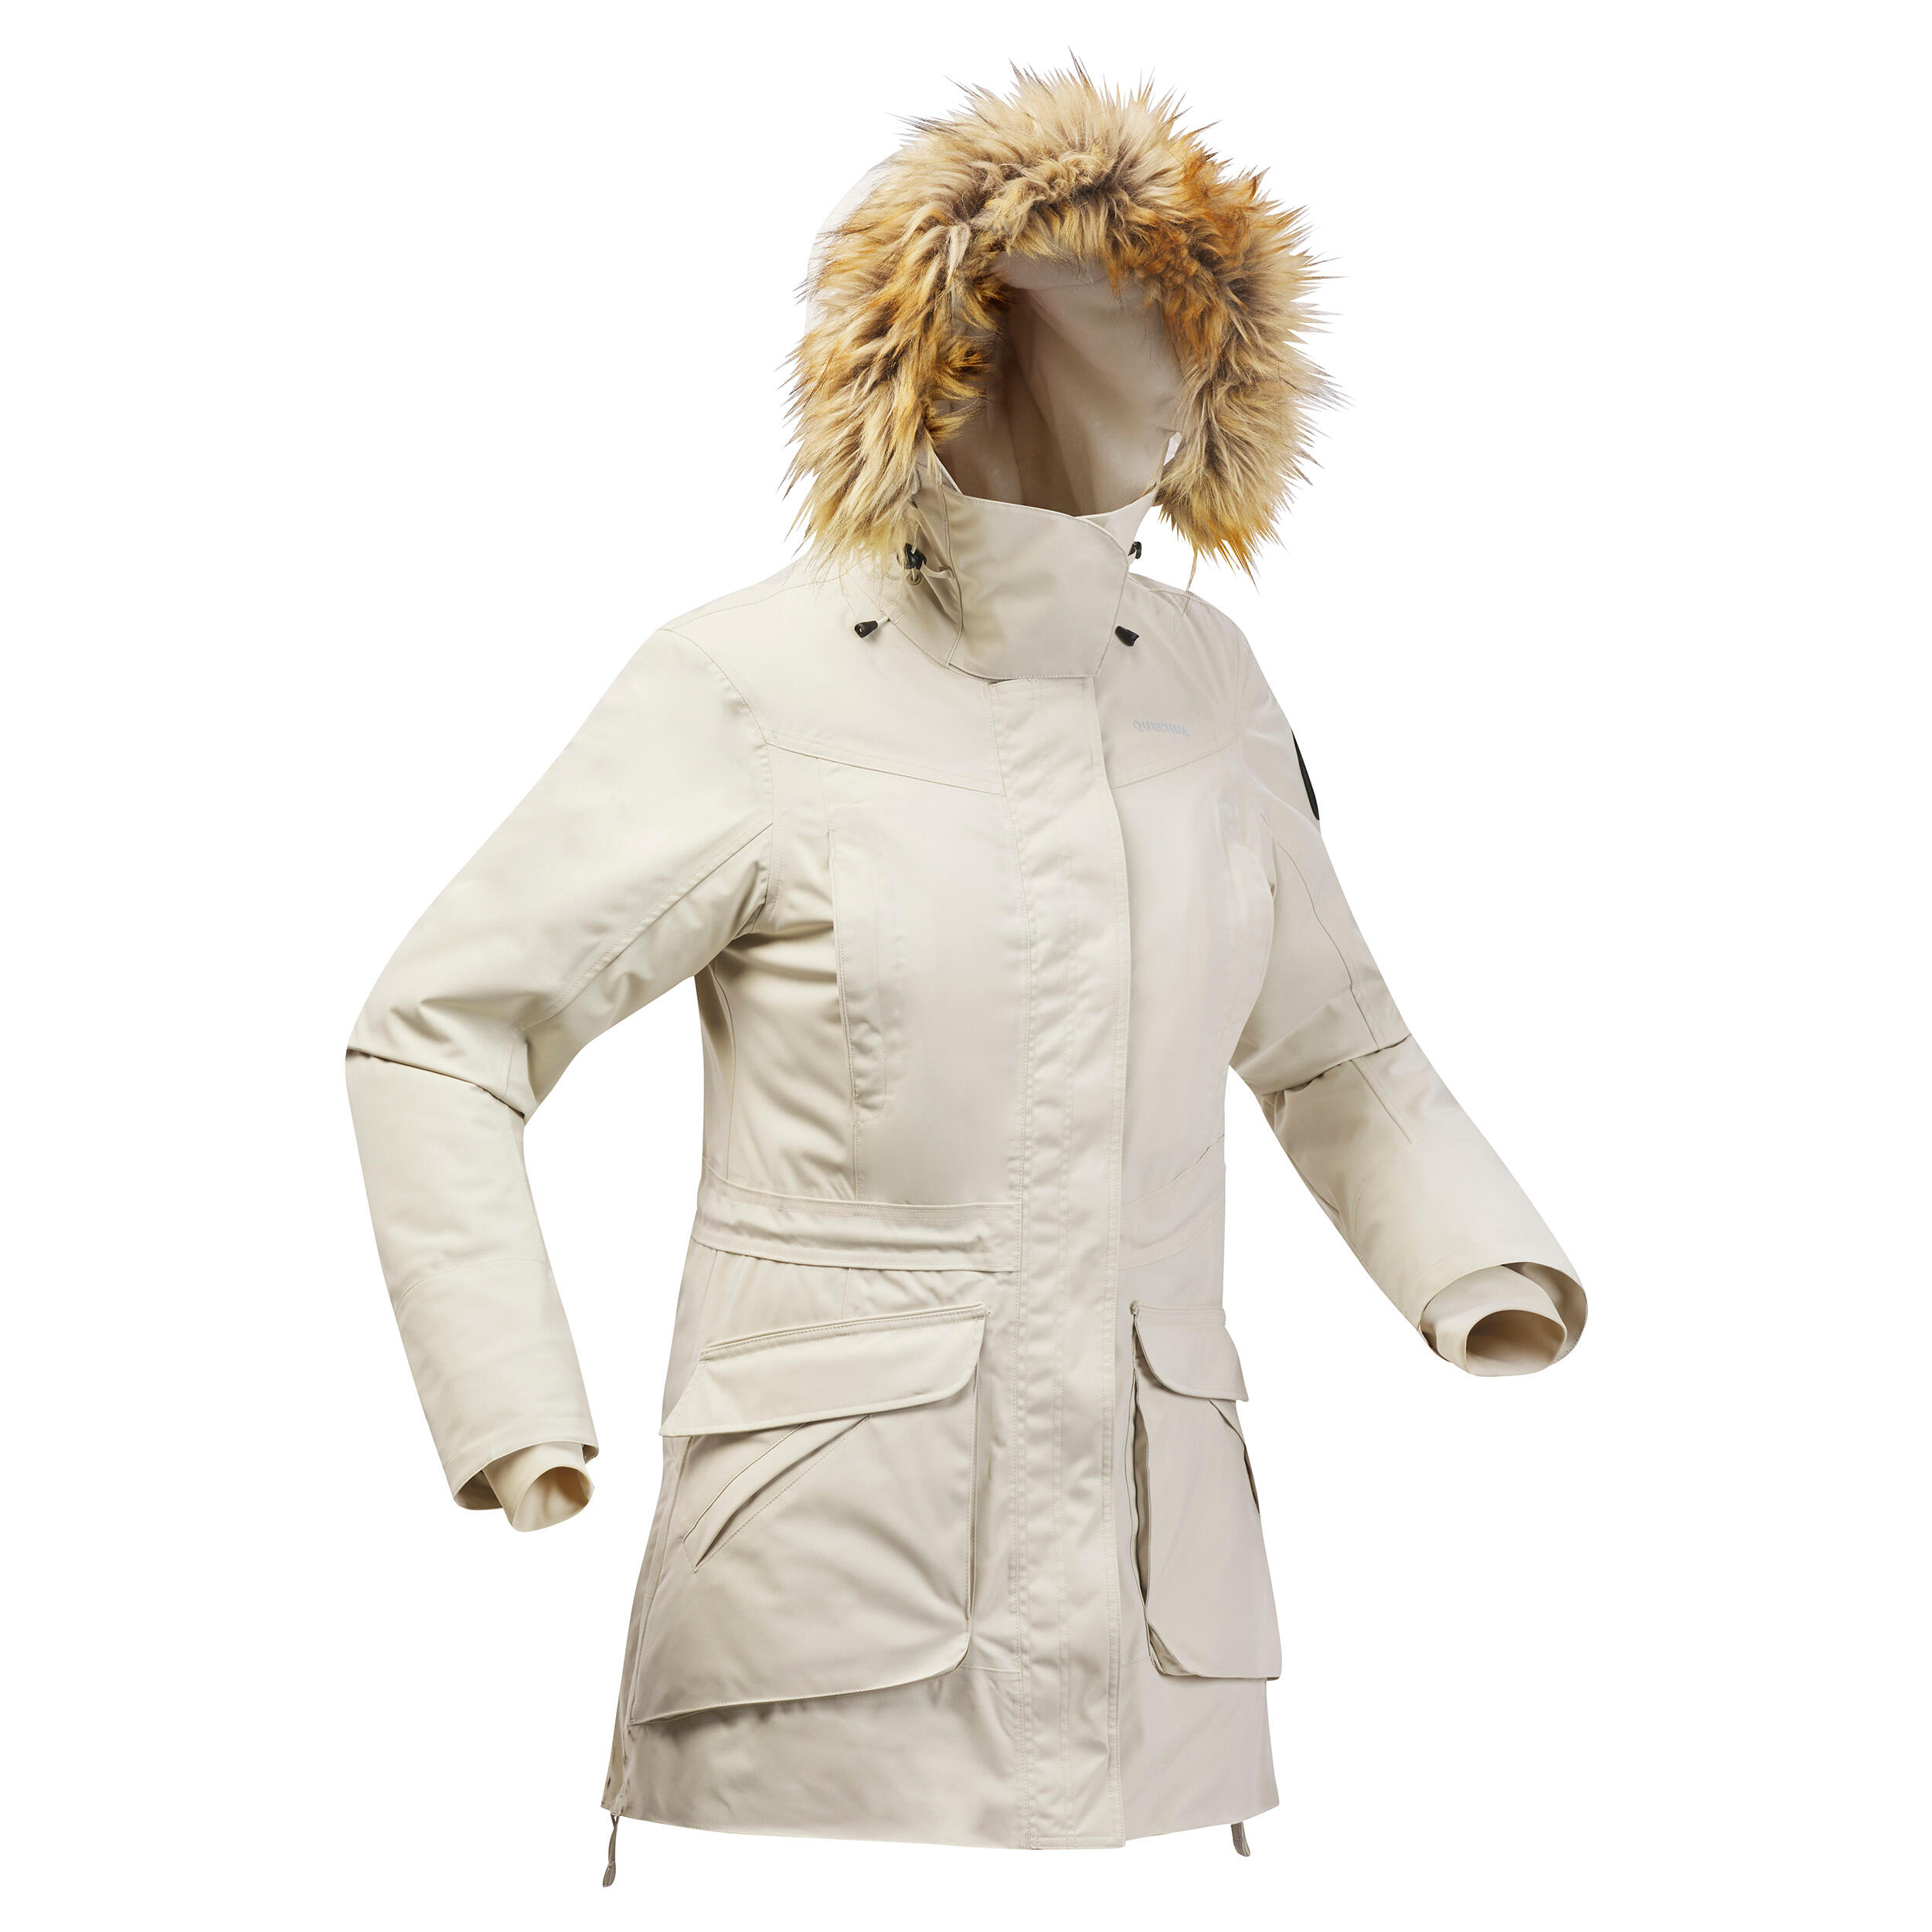 Windbreaker jacket - softshell - warm - MT500 - women's